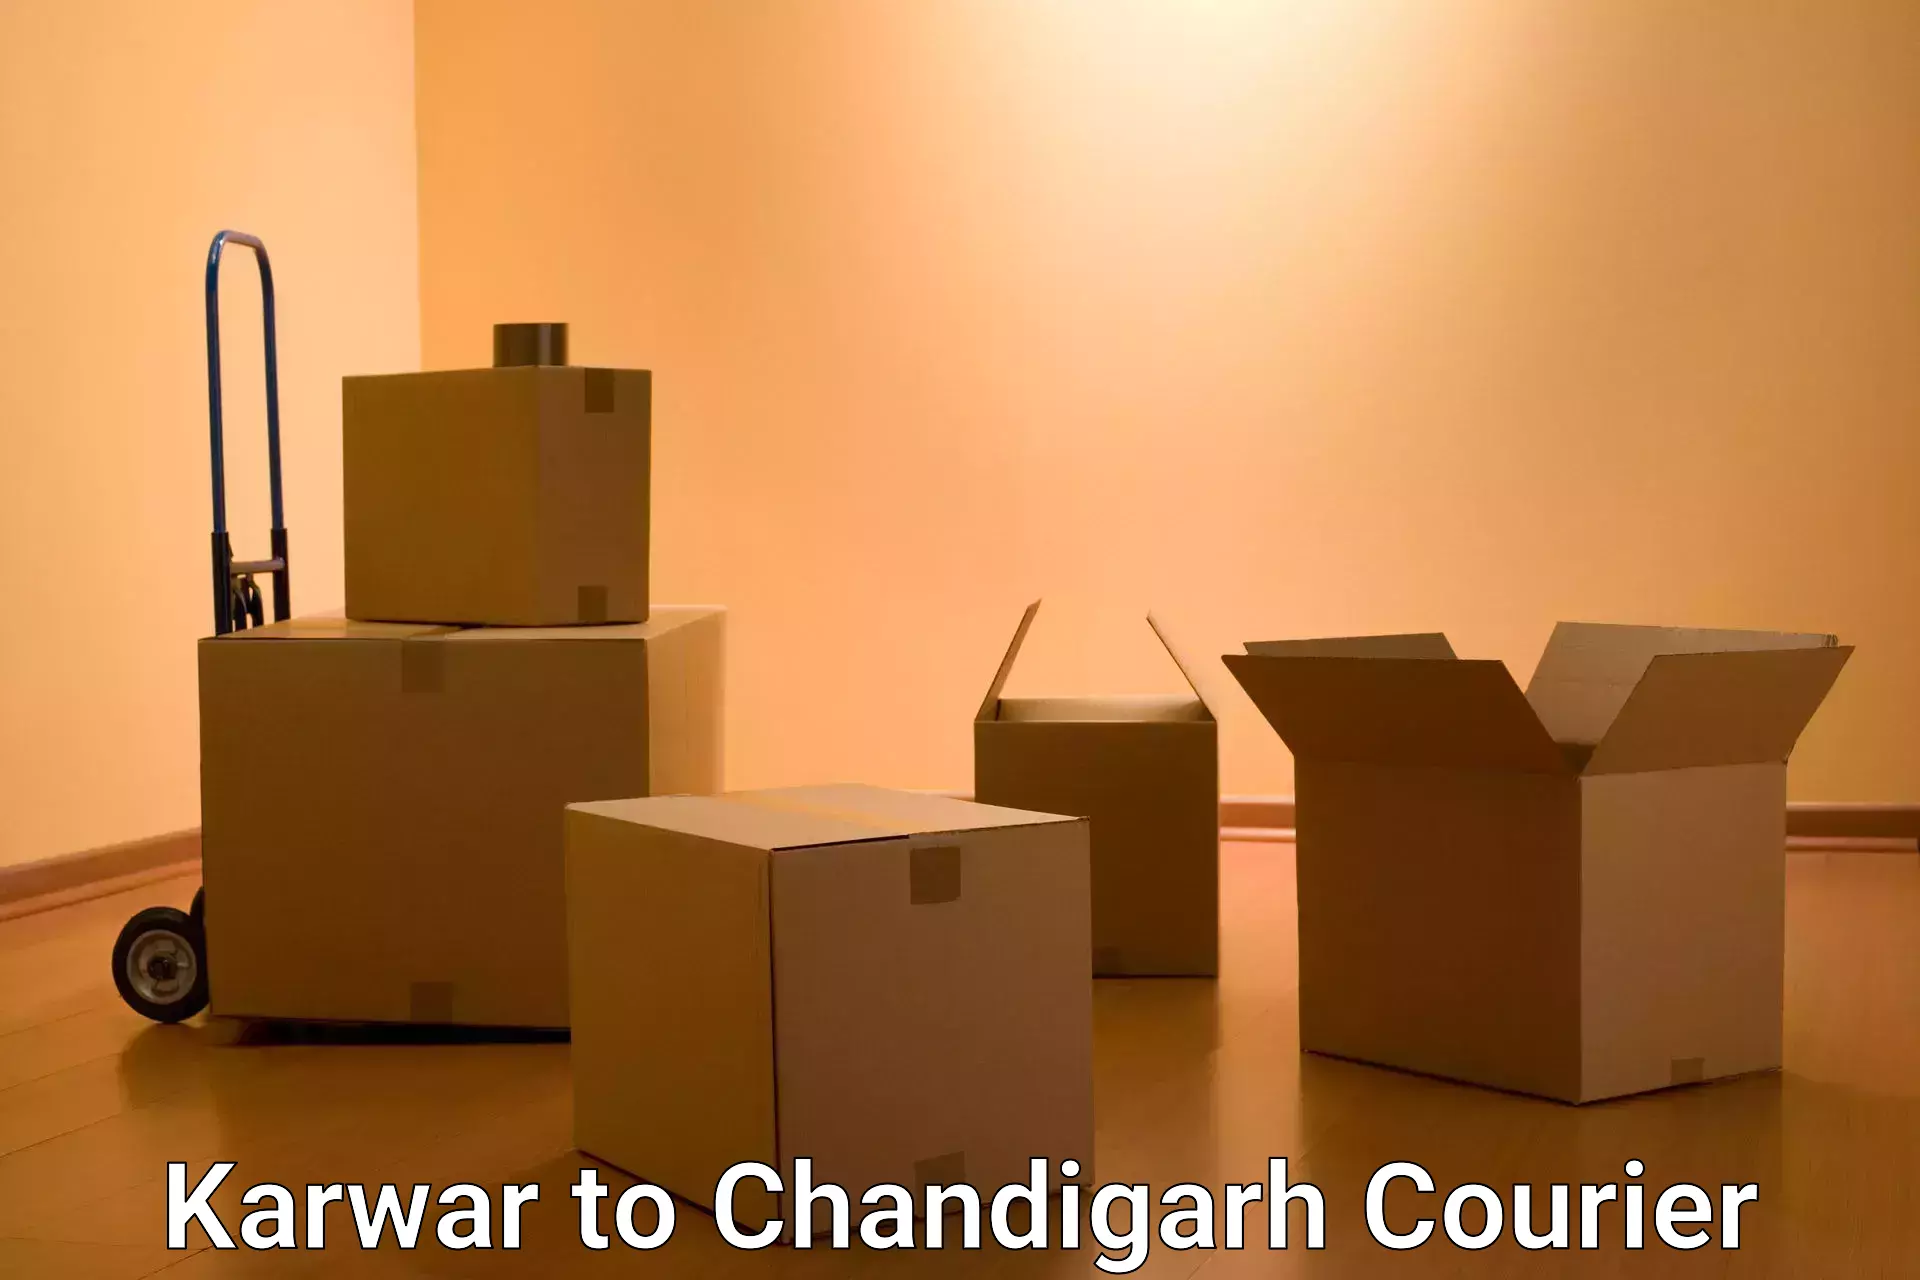 Efficient parcel service Karwar to Chandigarh